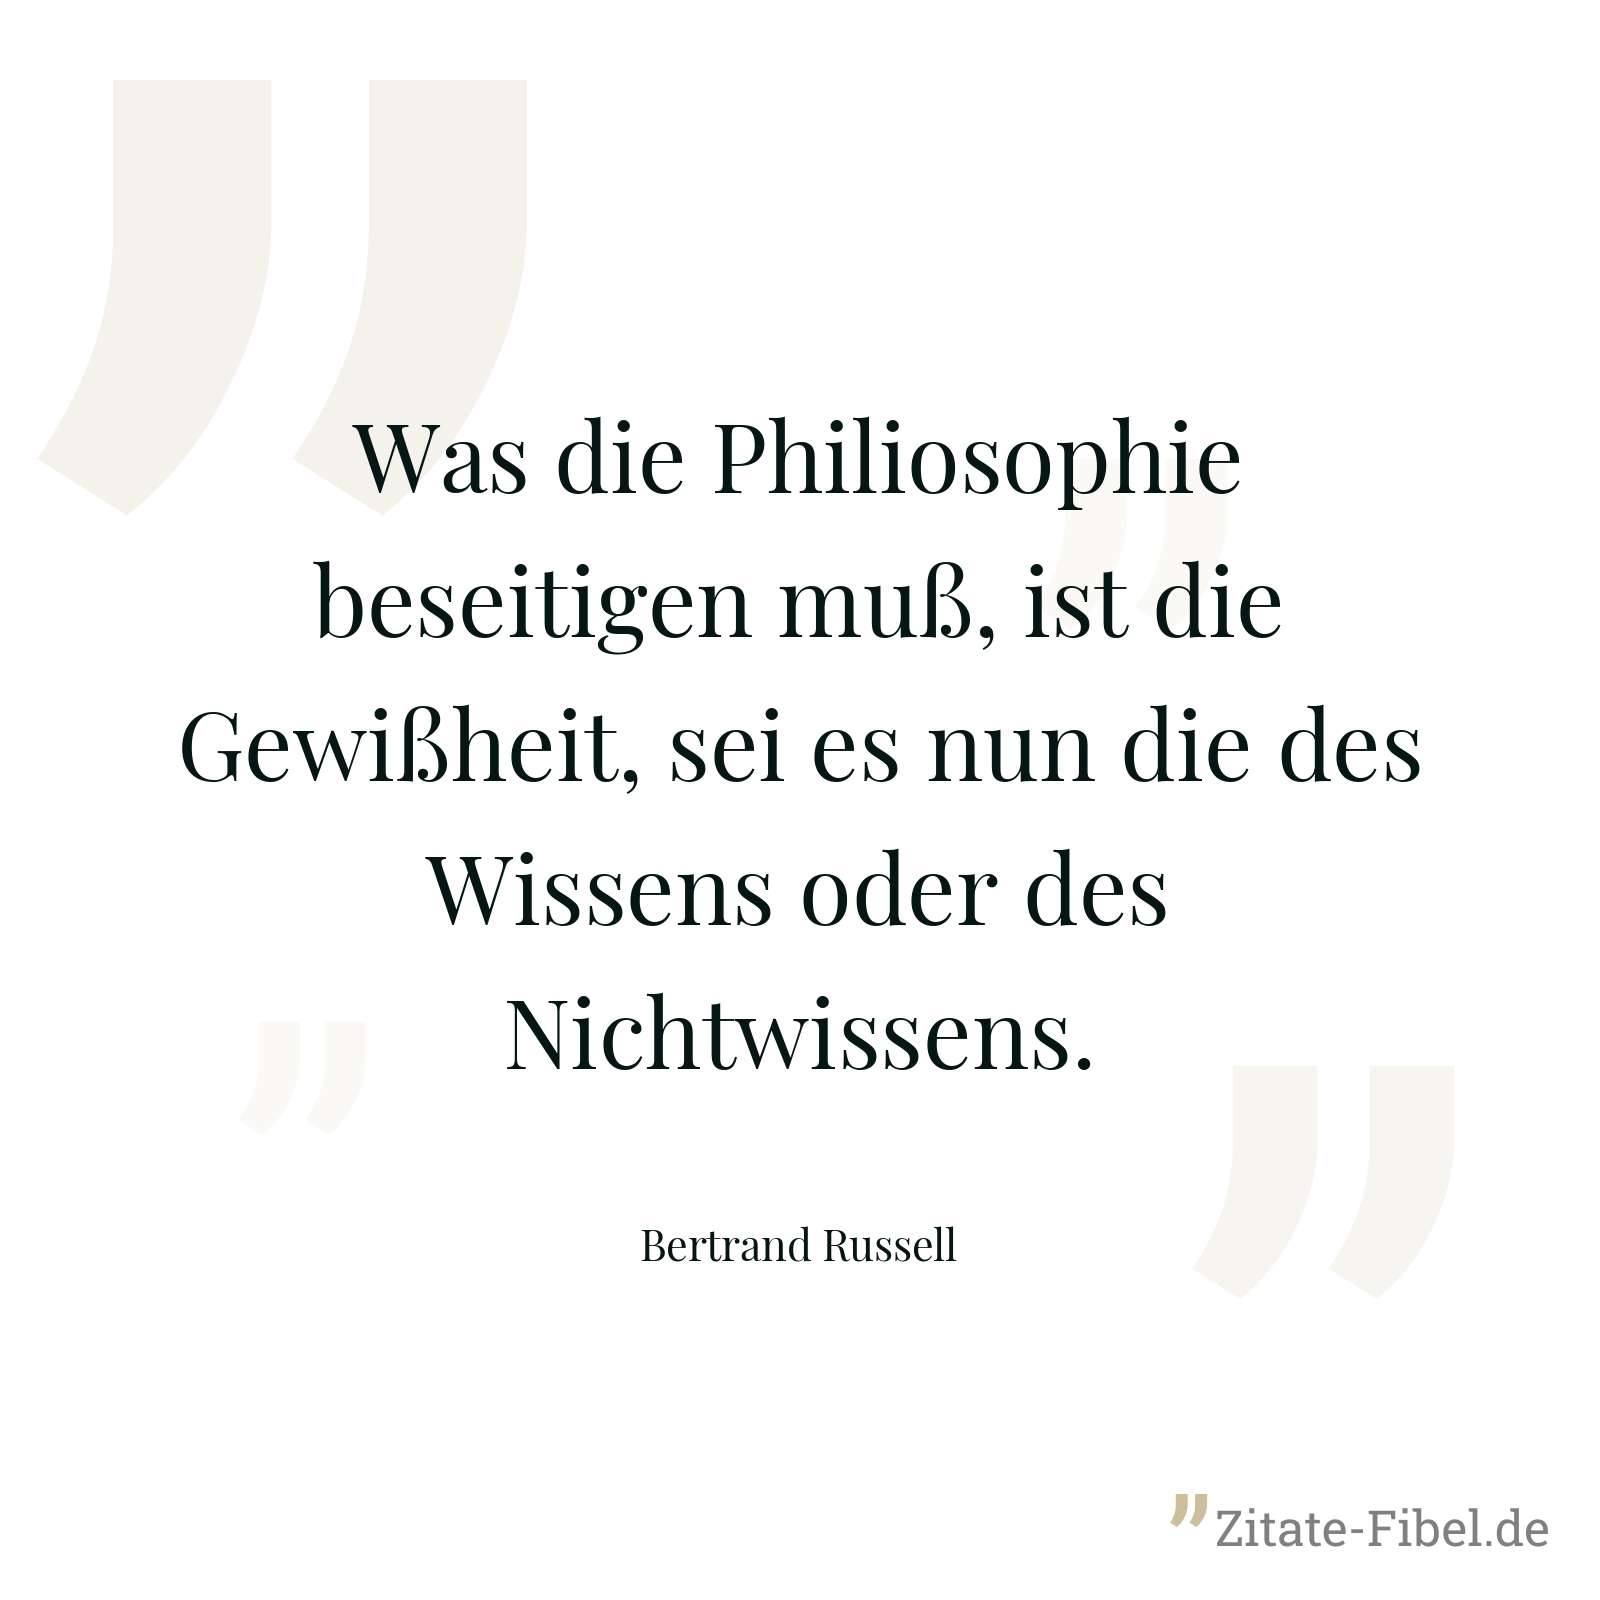 Was die Philiosophie beseitigen muß, ist die Gewißheit, sei es nun die des Wissens oder des Nichtwissens. - Bertrand Russell